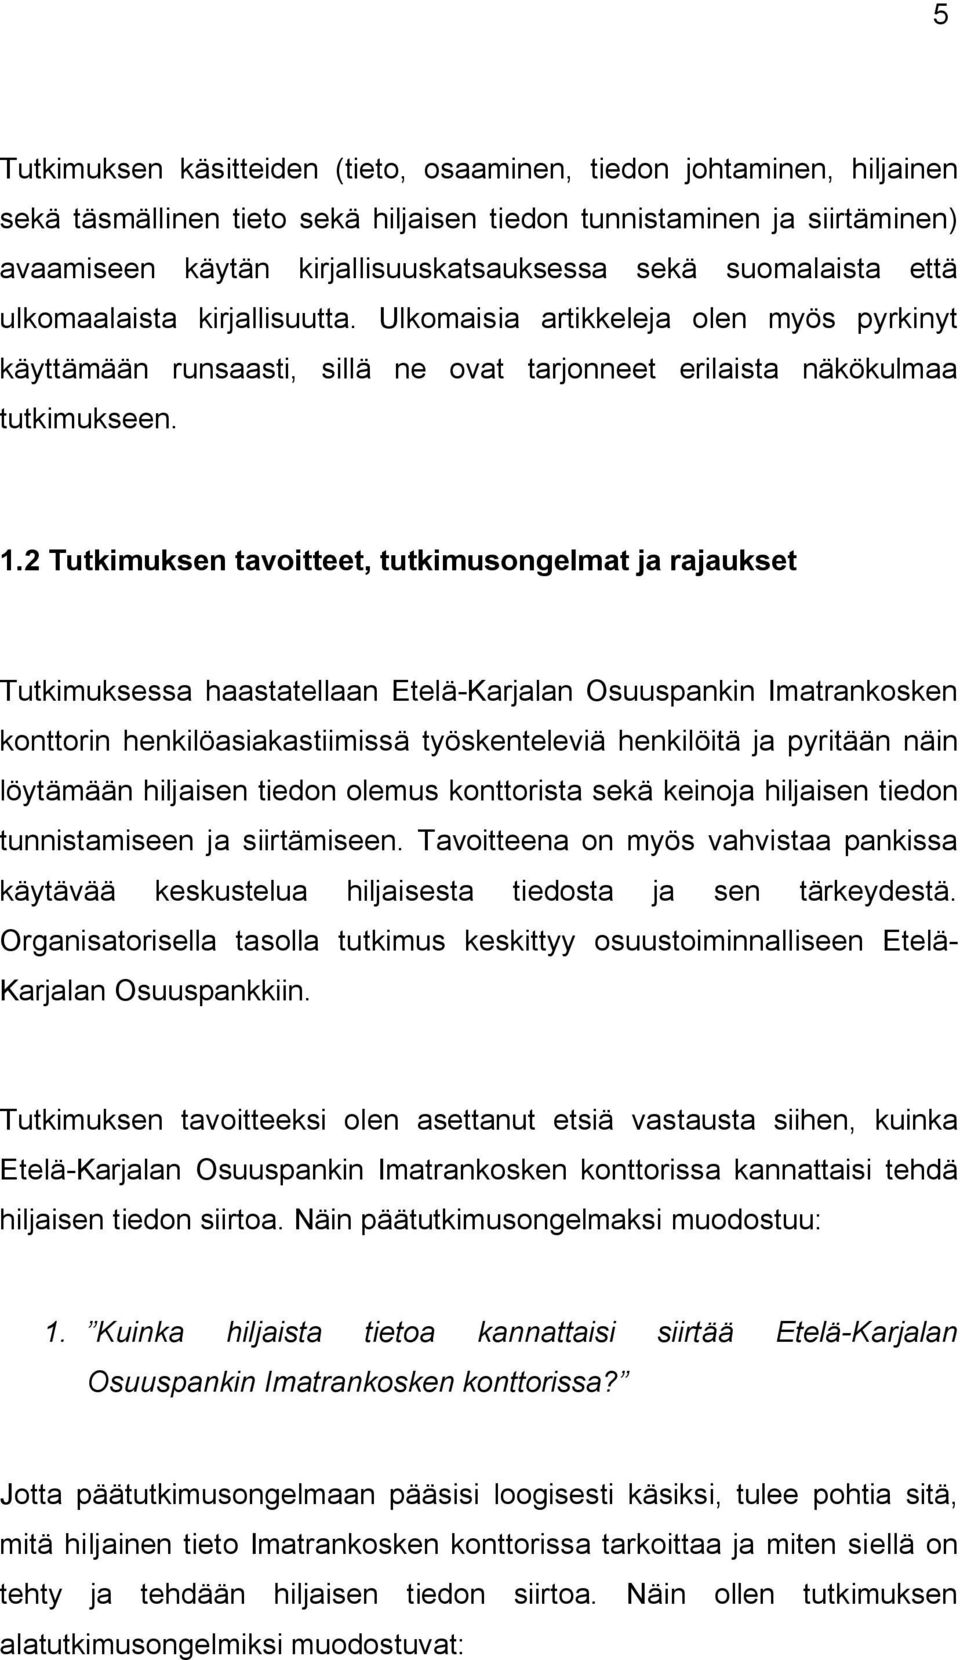 2 Tutkimuksen tavoitteet, tutkimusongelmat ja rajaukset Tutkimuksessa haastatellaan Etelä-Karjalan Osuuspankin Imatrankosken konttorin henkilöasiakastiimissä työskenteleviä henkilöitä ja pyritään